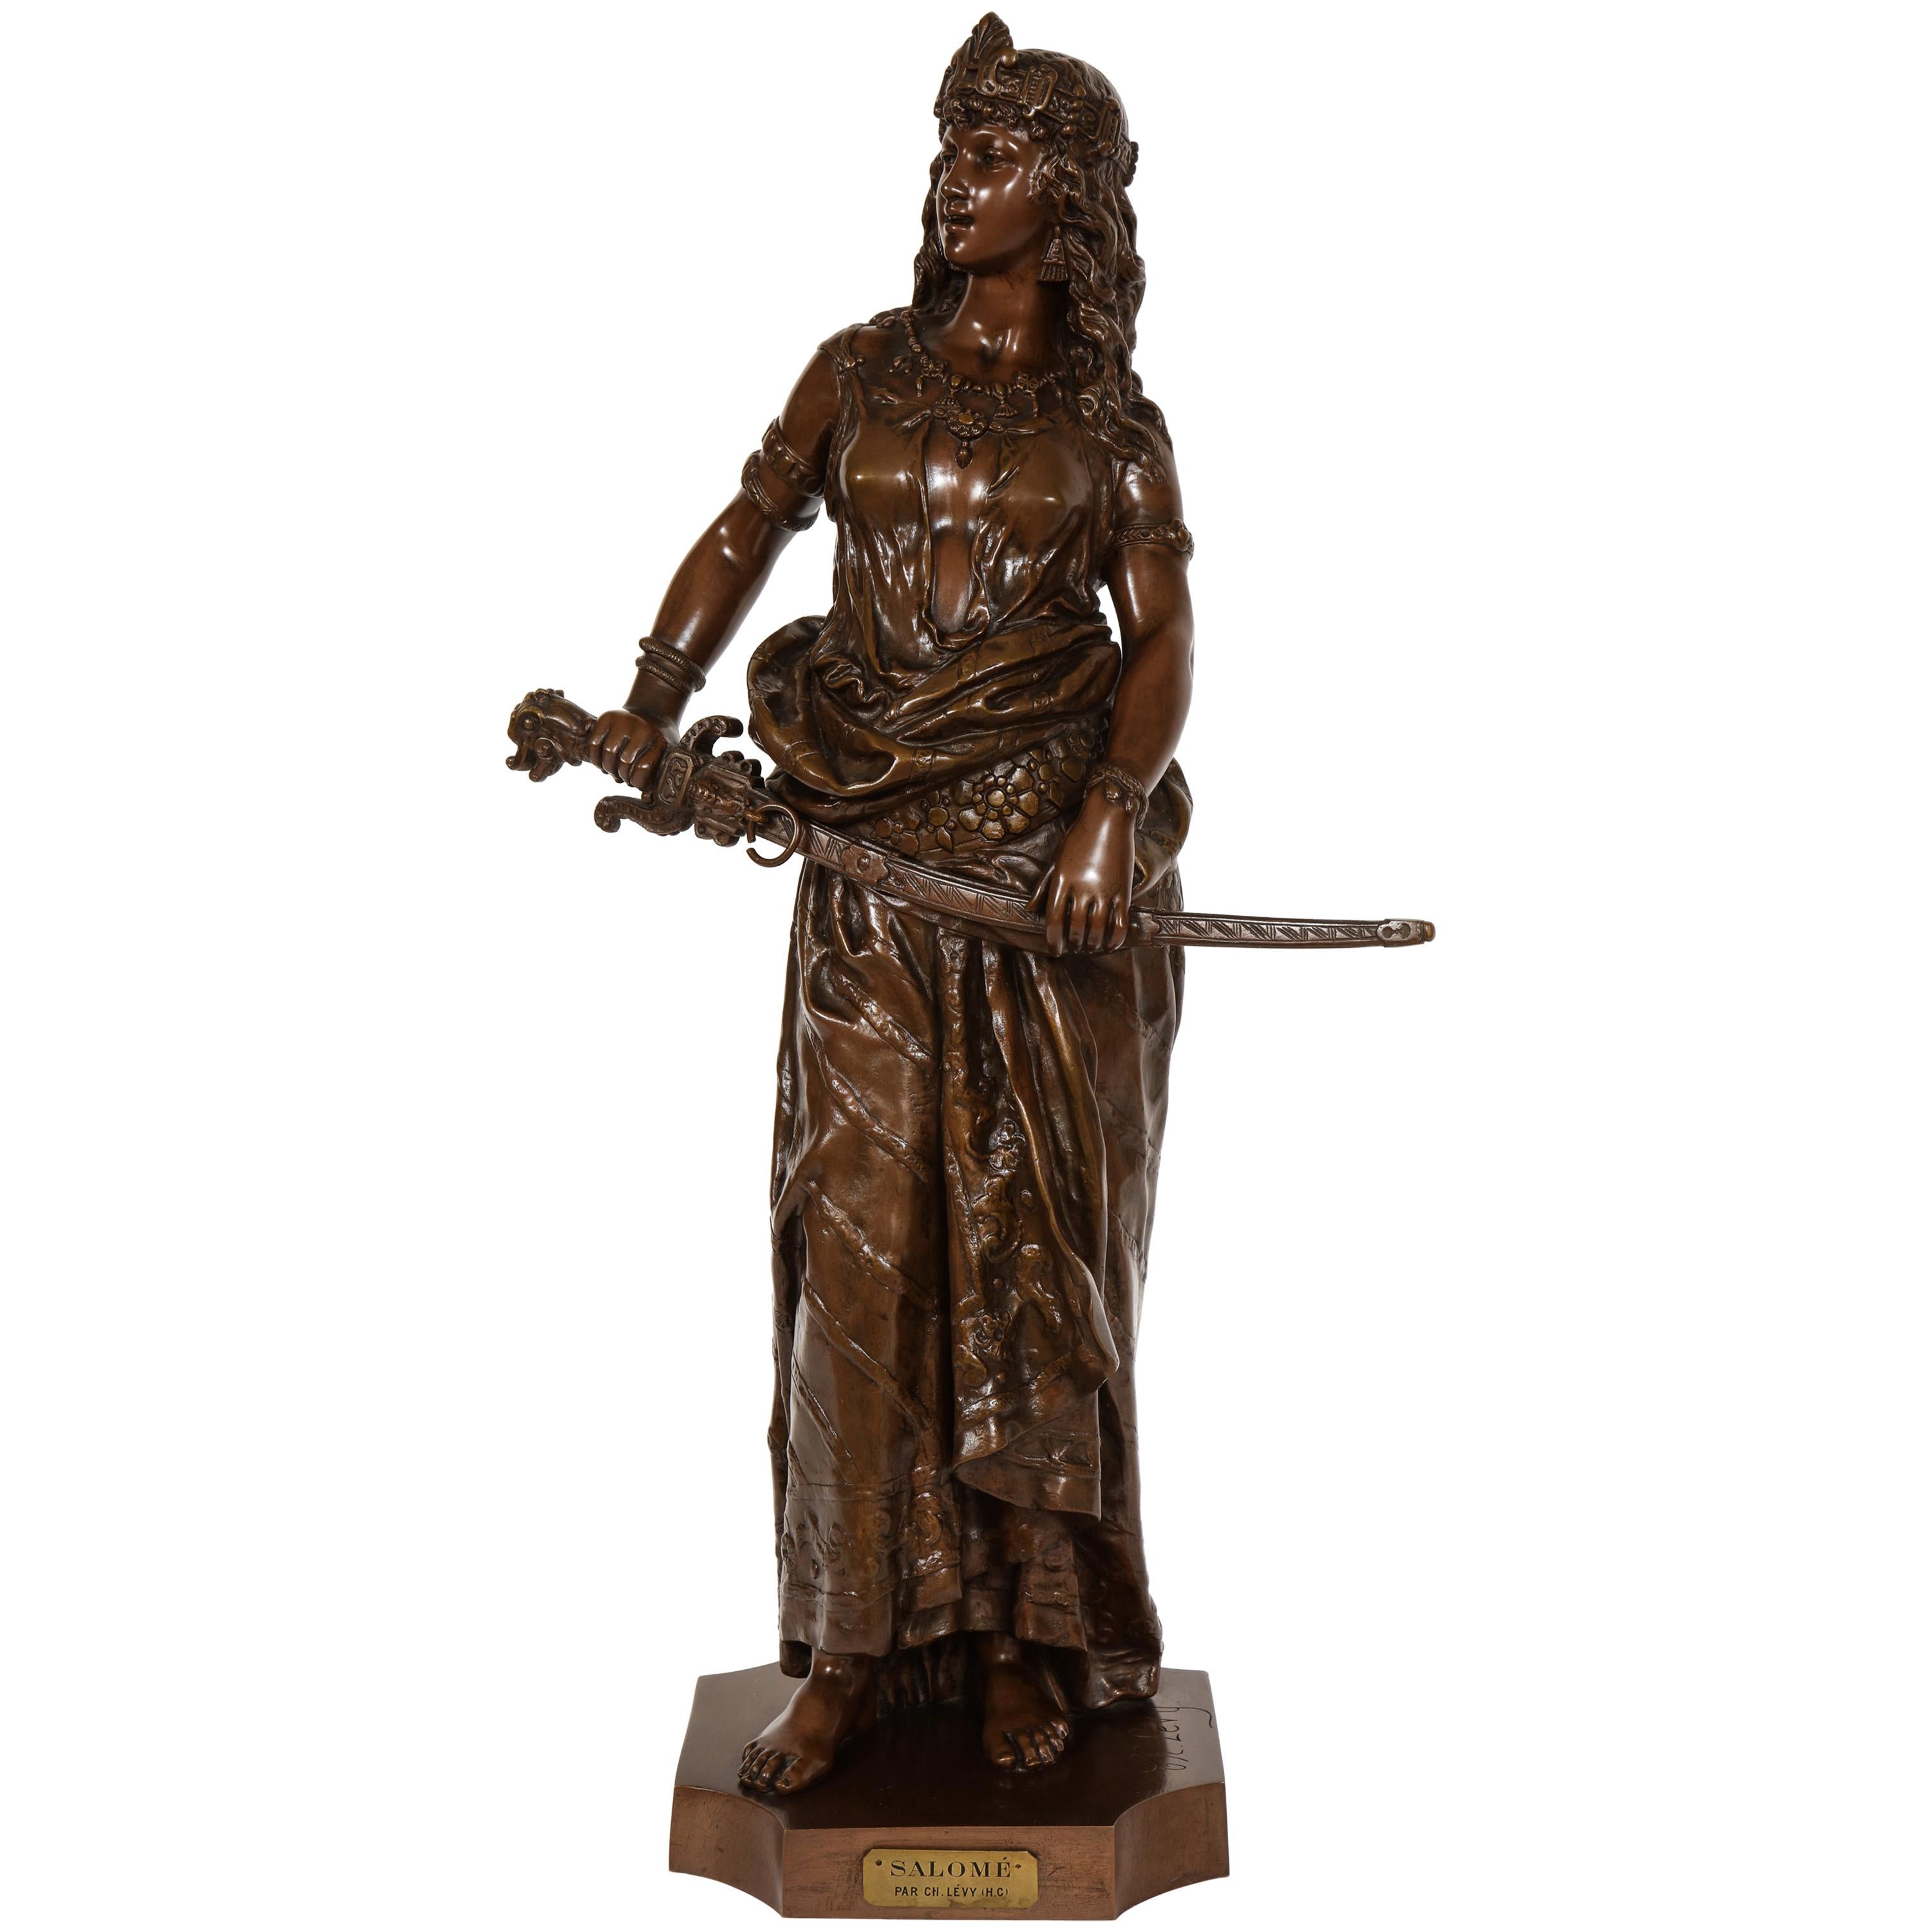 Grande sculpture en bronze patiné de "Salome" de Charles Octave Levy